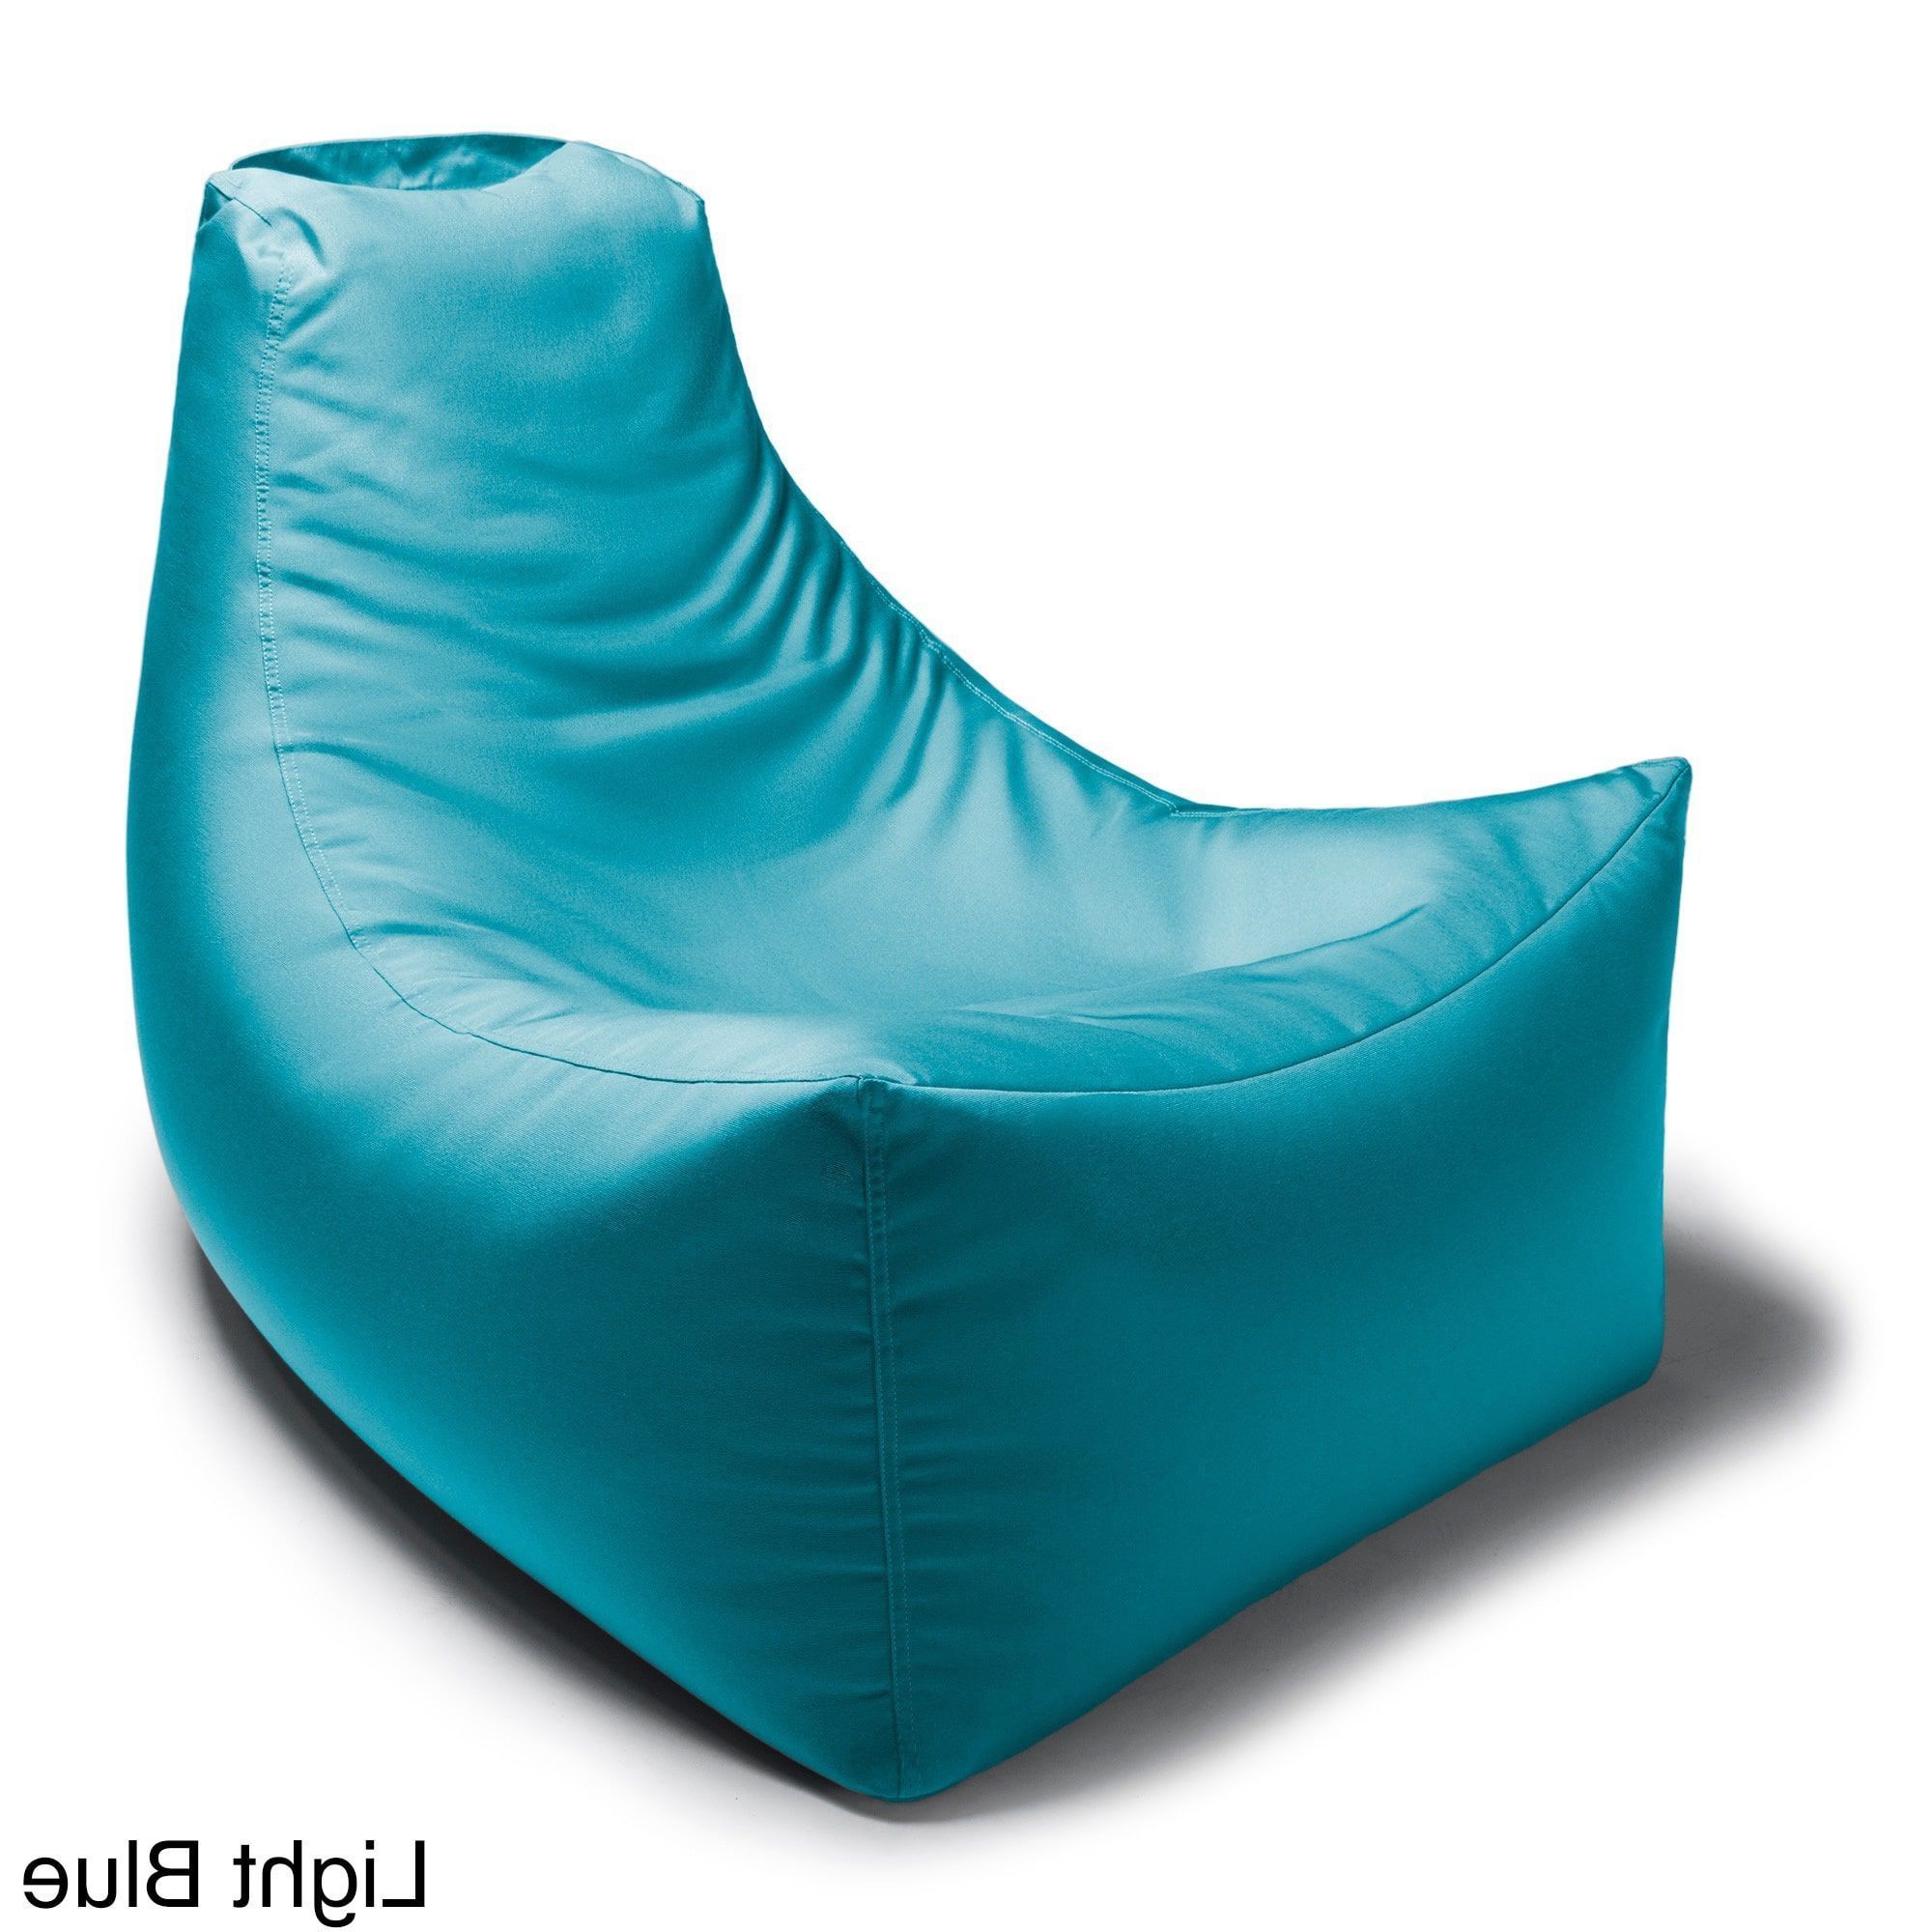 Jaxx Juniper Indoor/ Outdoor Patio Bean Bag Chair (water Intended For Widely Used Indoor/outdoor Patio Bean Bag Chairs (View 10 of 25)